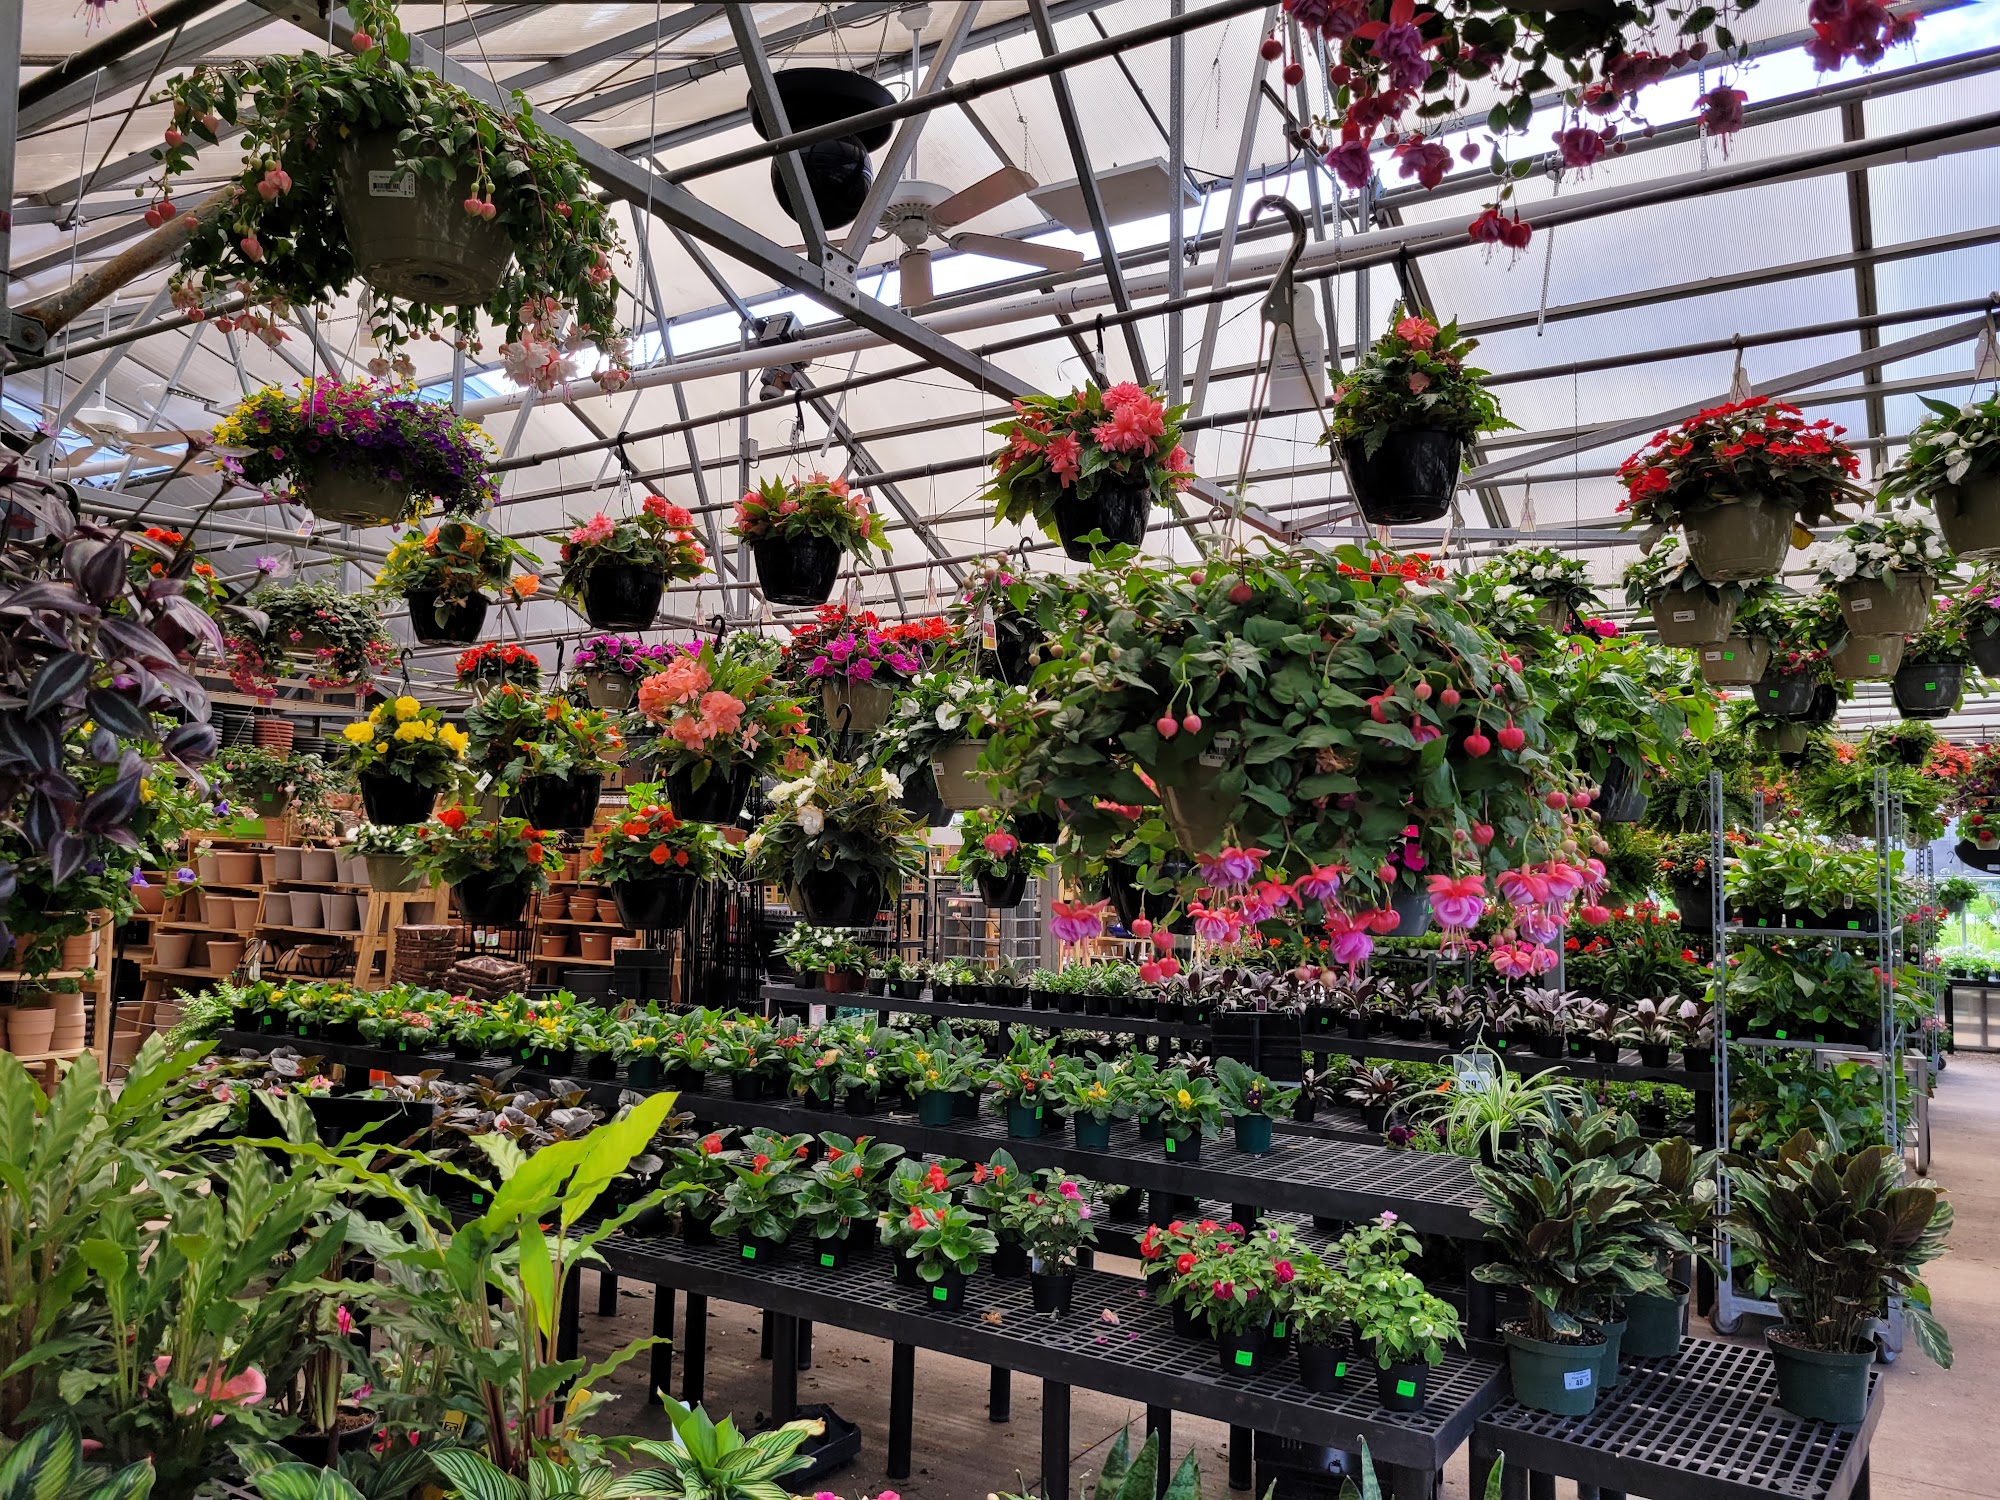 Gallea's Florist & Greenhouse